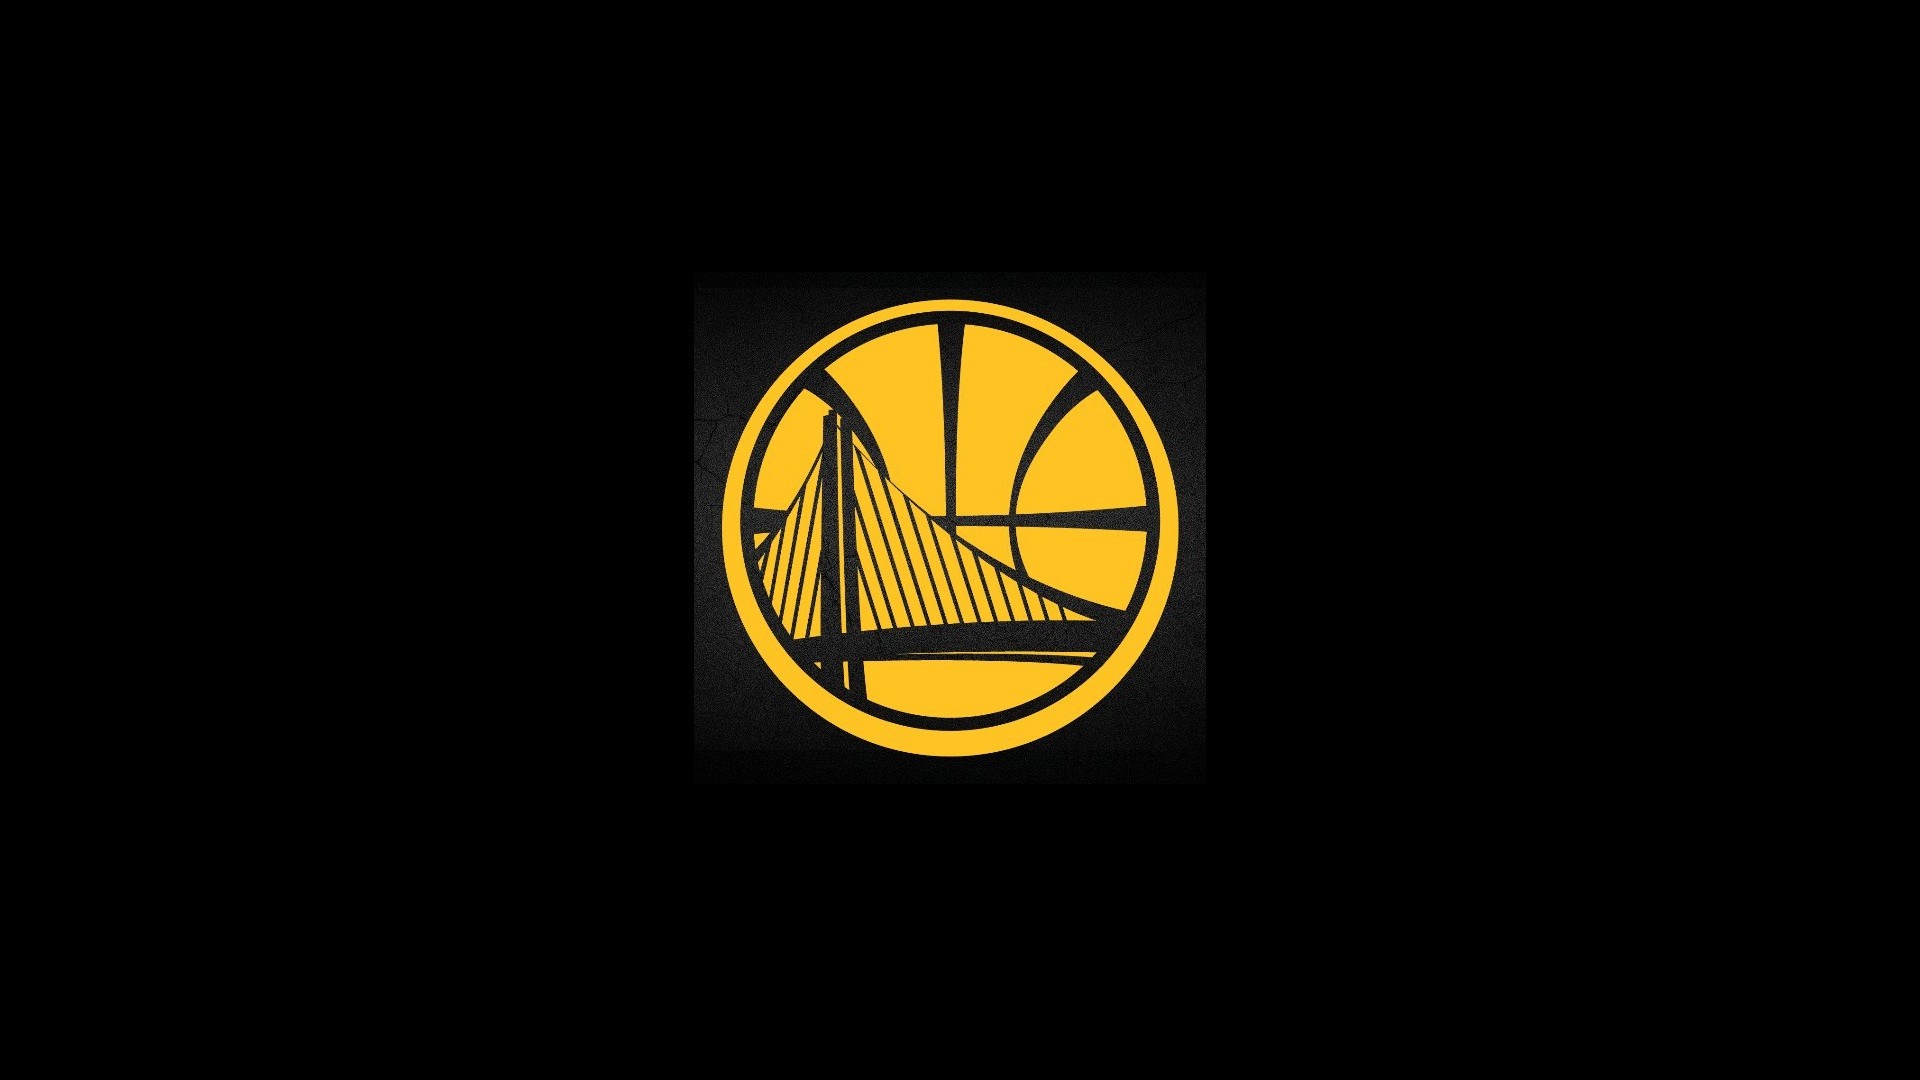 Hd Golden State Warriors Backgrounds 2021 Basketball Wallpaper